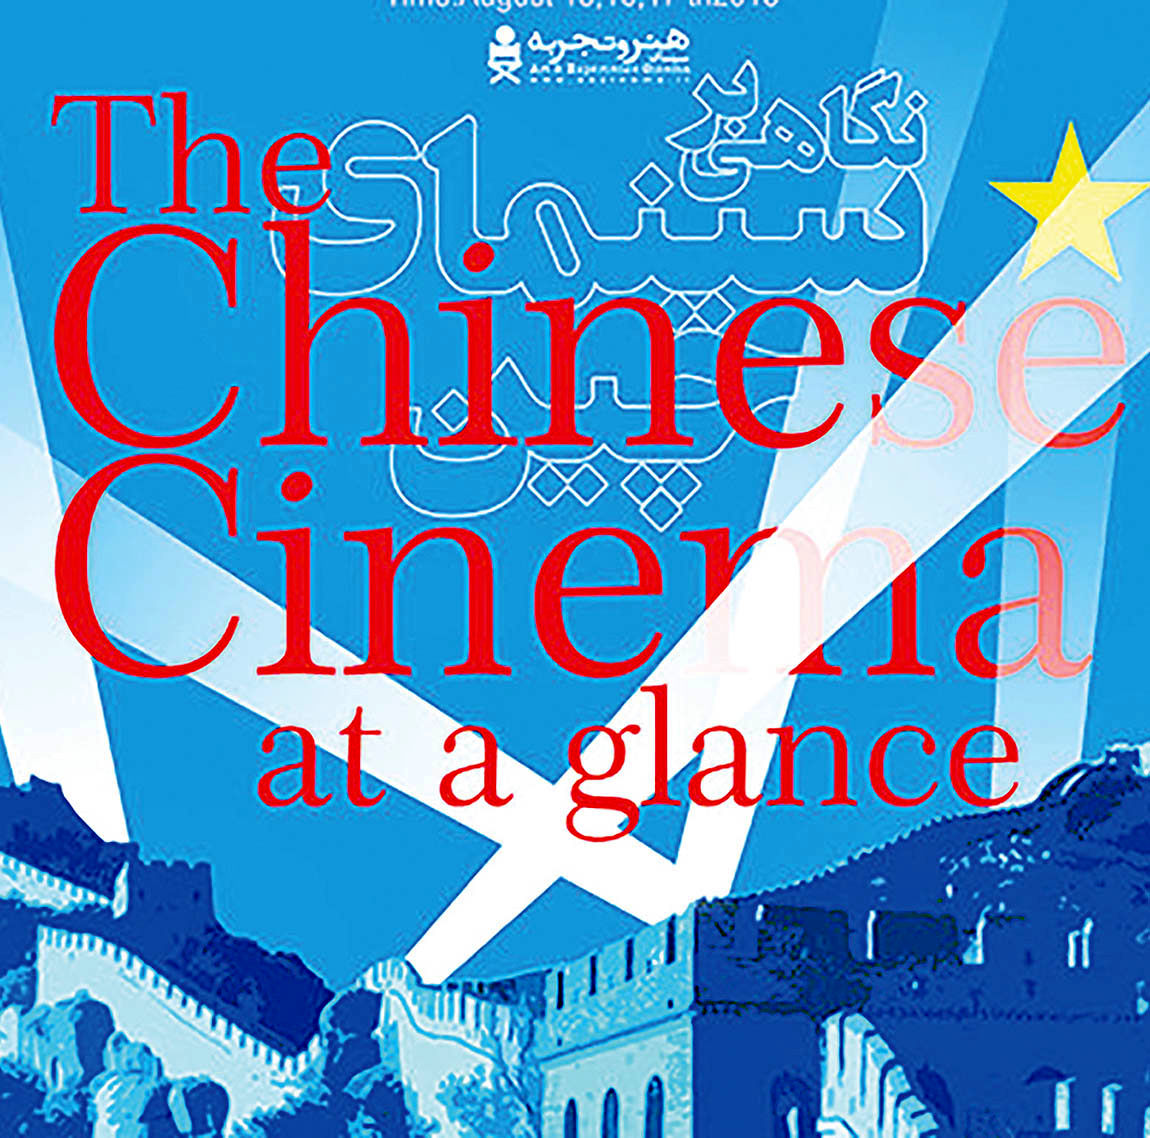 مرور سینمای چین در گروه «هنر و تجربه»